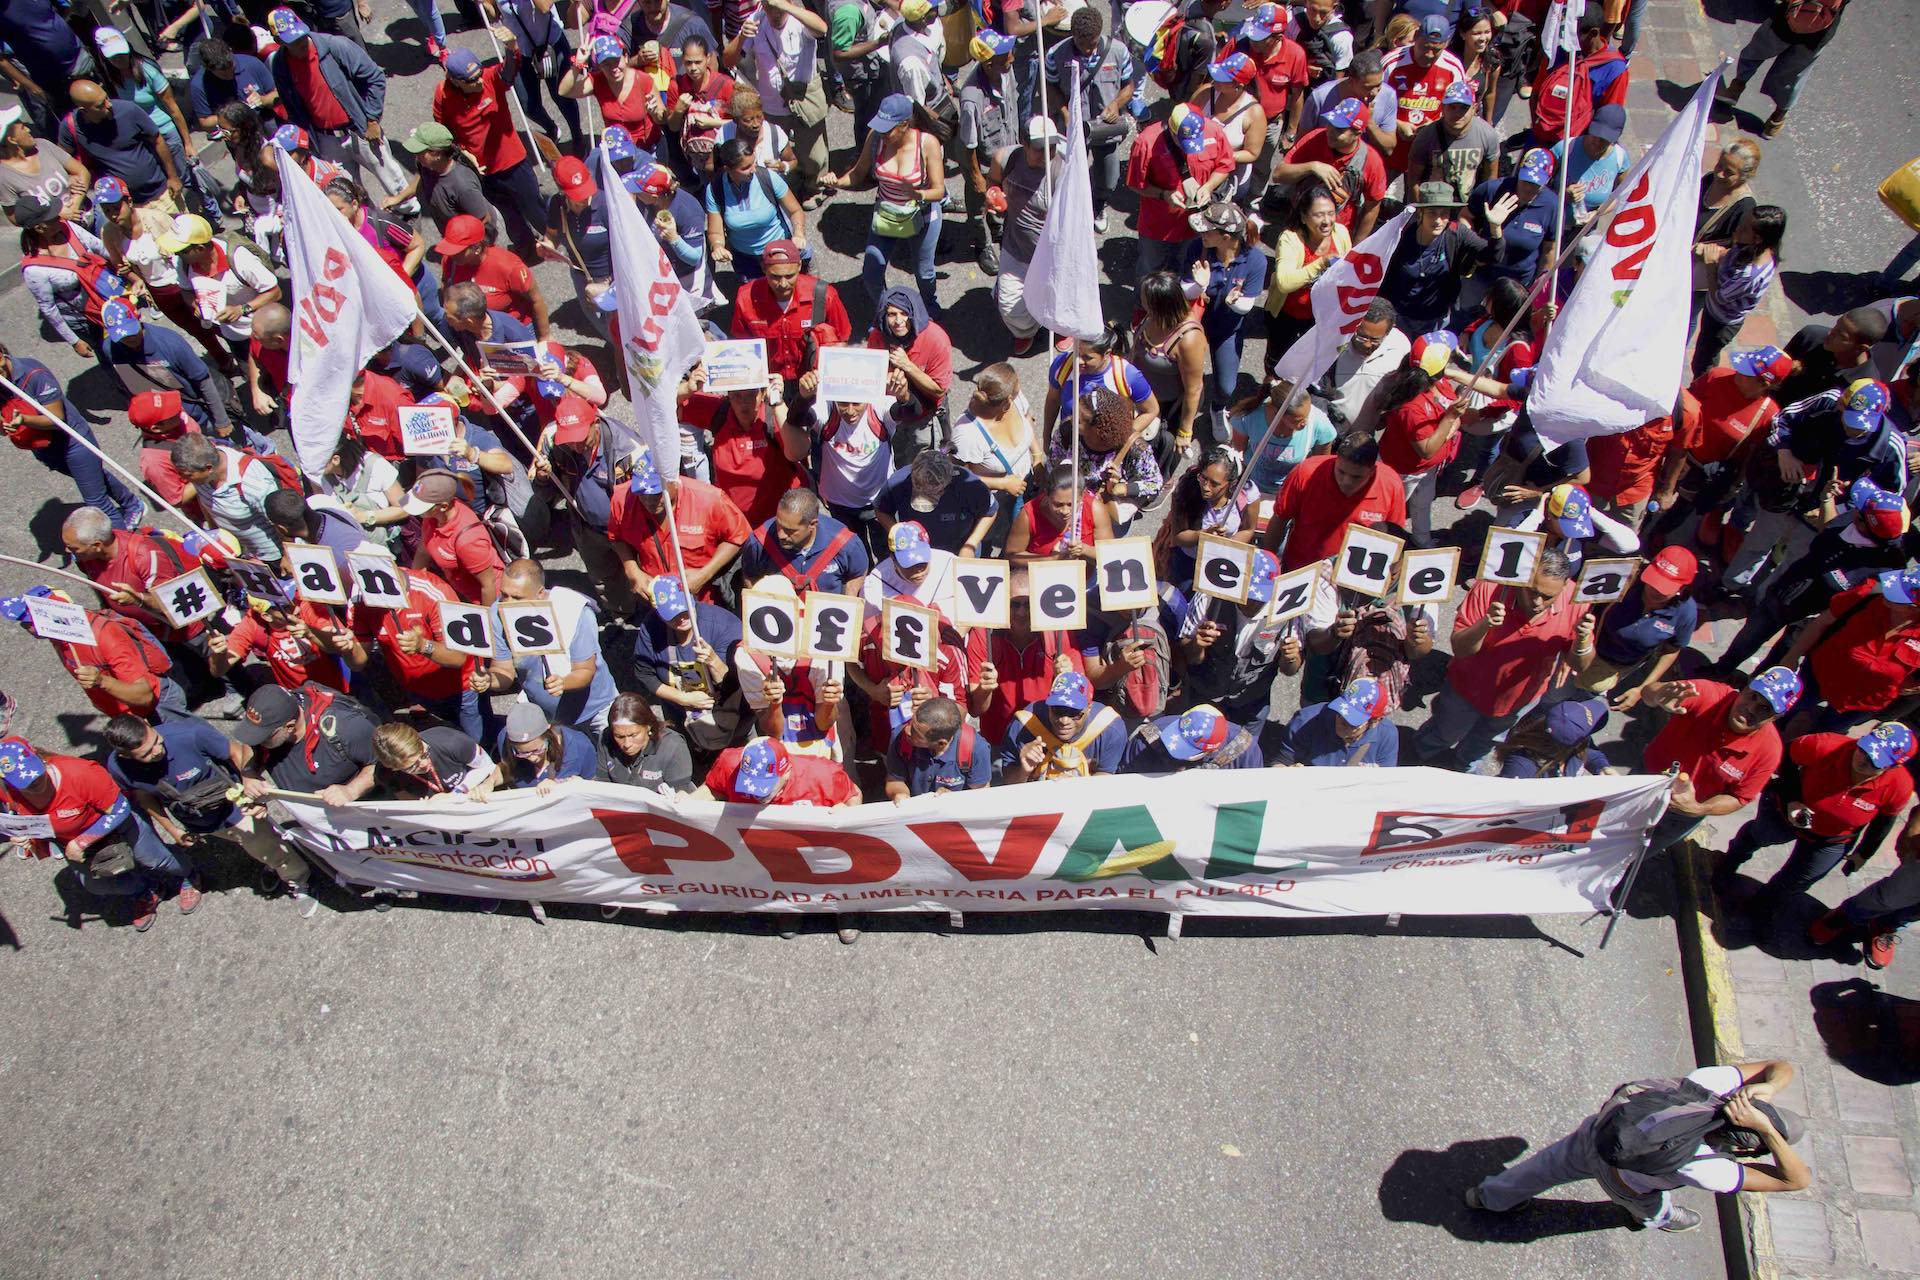 Venezuela march solidarity